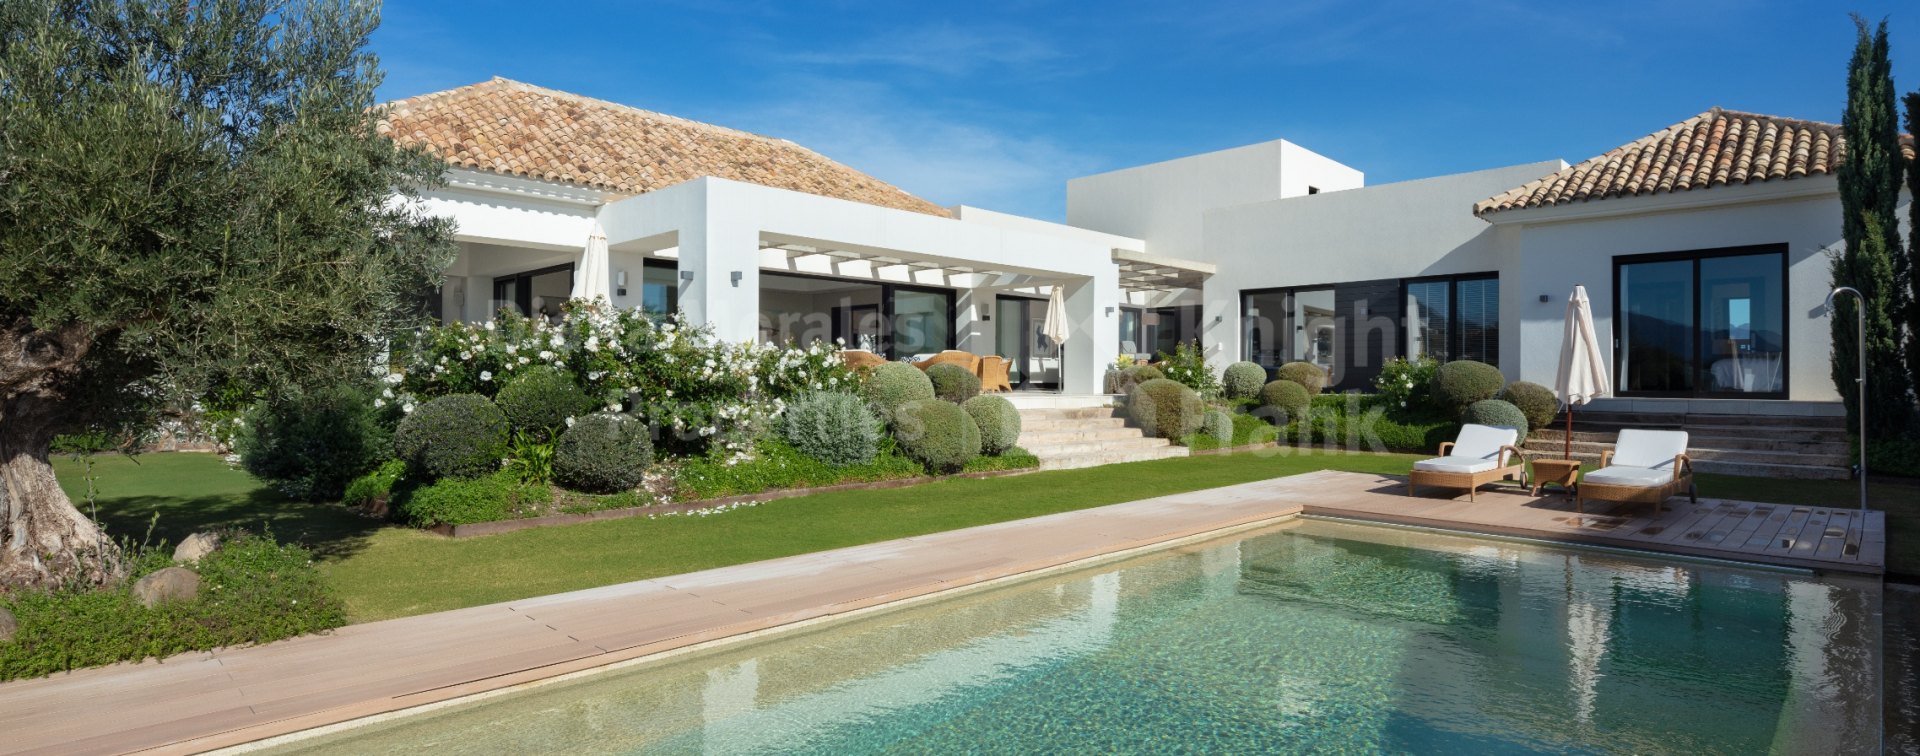 Haza del Conde, Casa Nevis: Exquisita villa de estilo mediterráneo con preciosas vistas al Valle del Golf en Marbella